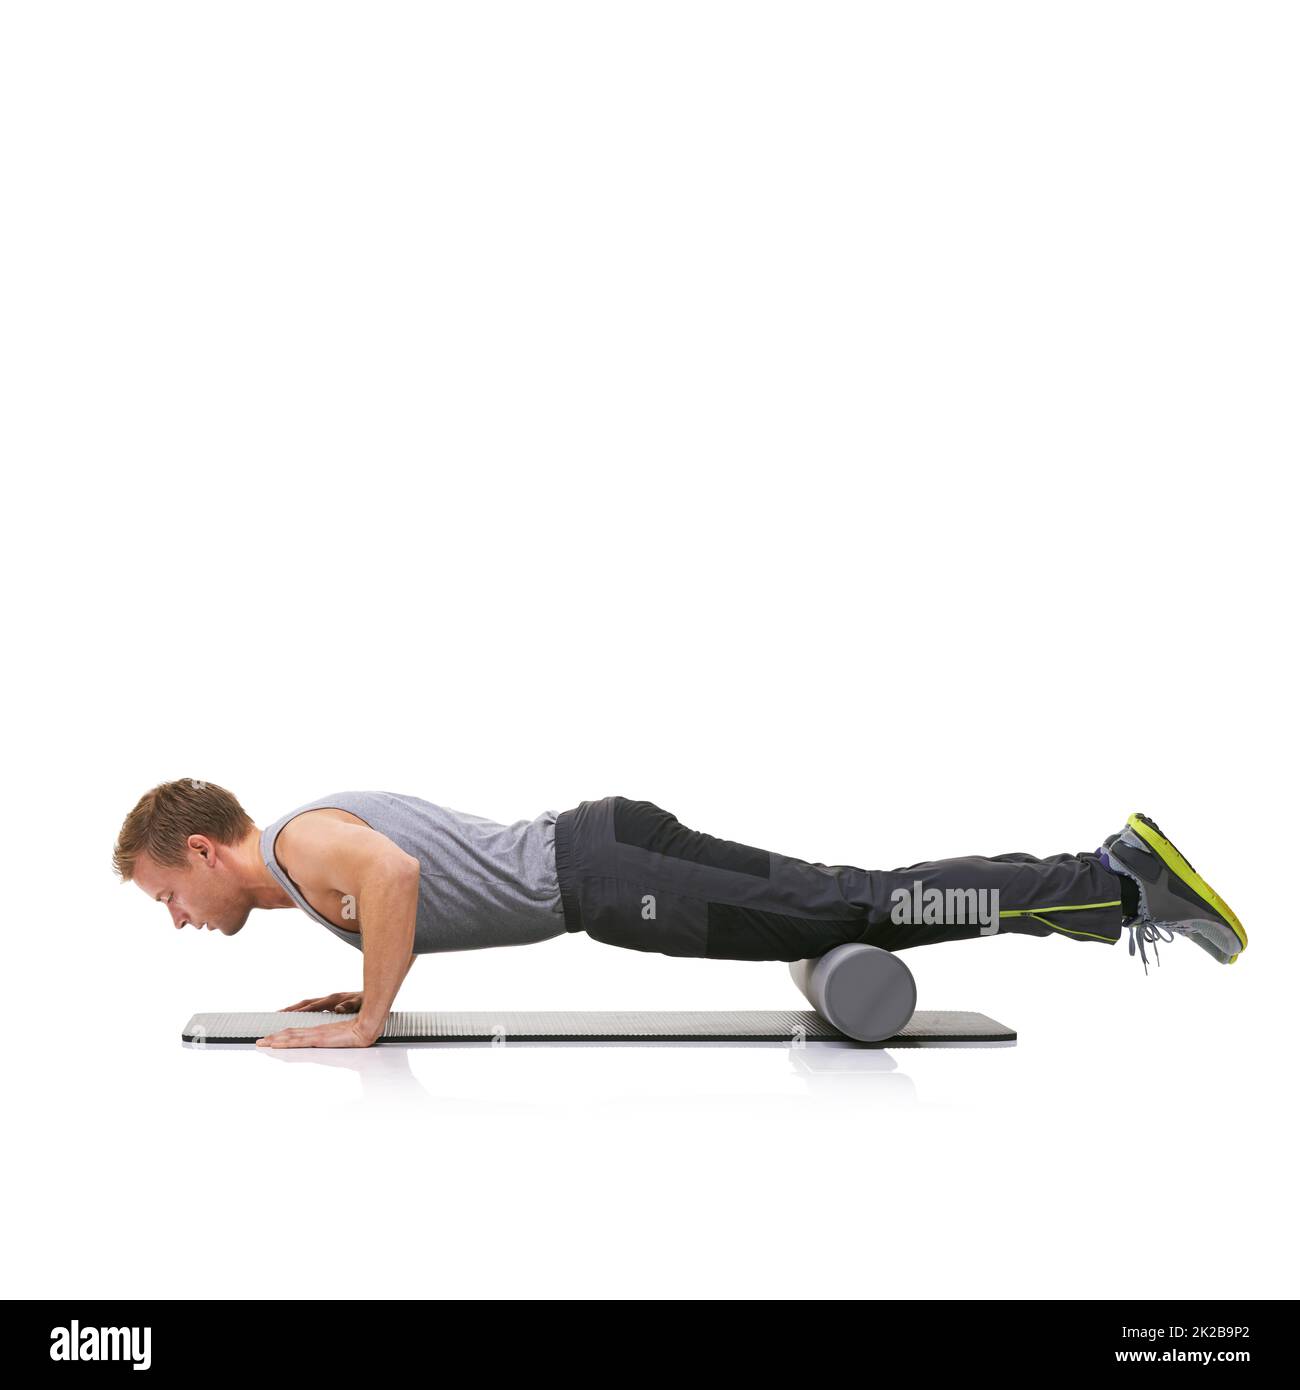 Améliorer sa force et sa flexibilité. Un jeune homme qui fait des push-up sur son tapis d'exercice avec ses jambes soulevées par un rouleau en mousse. Banque D'Images